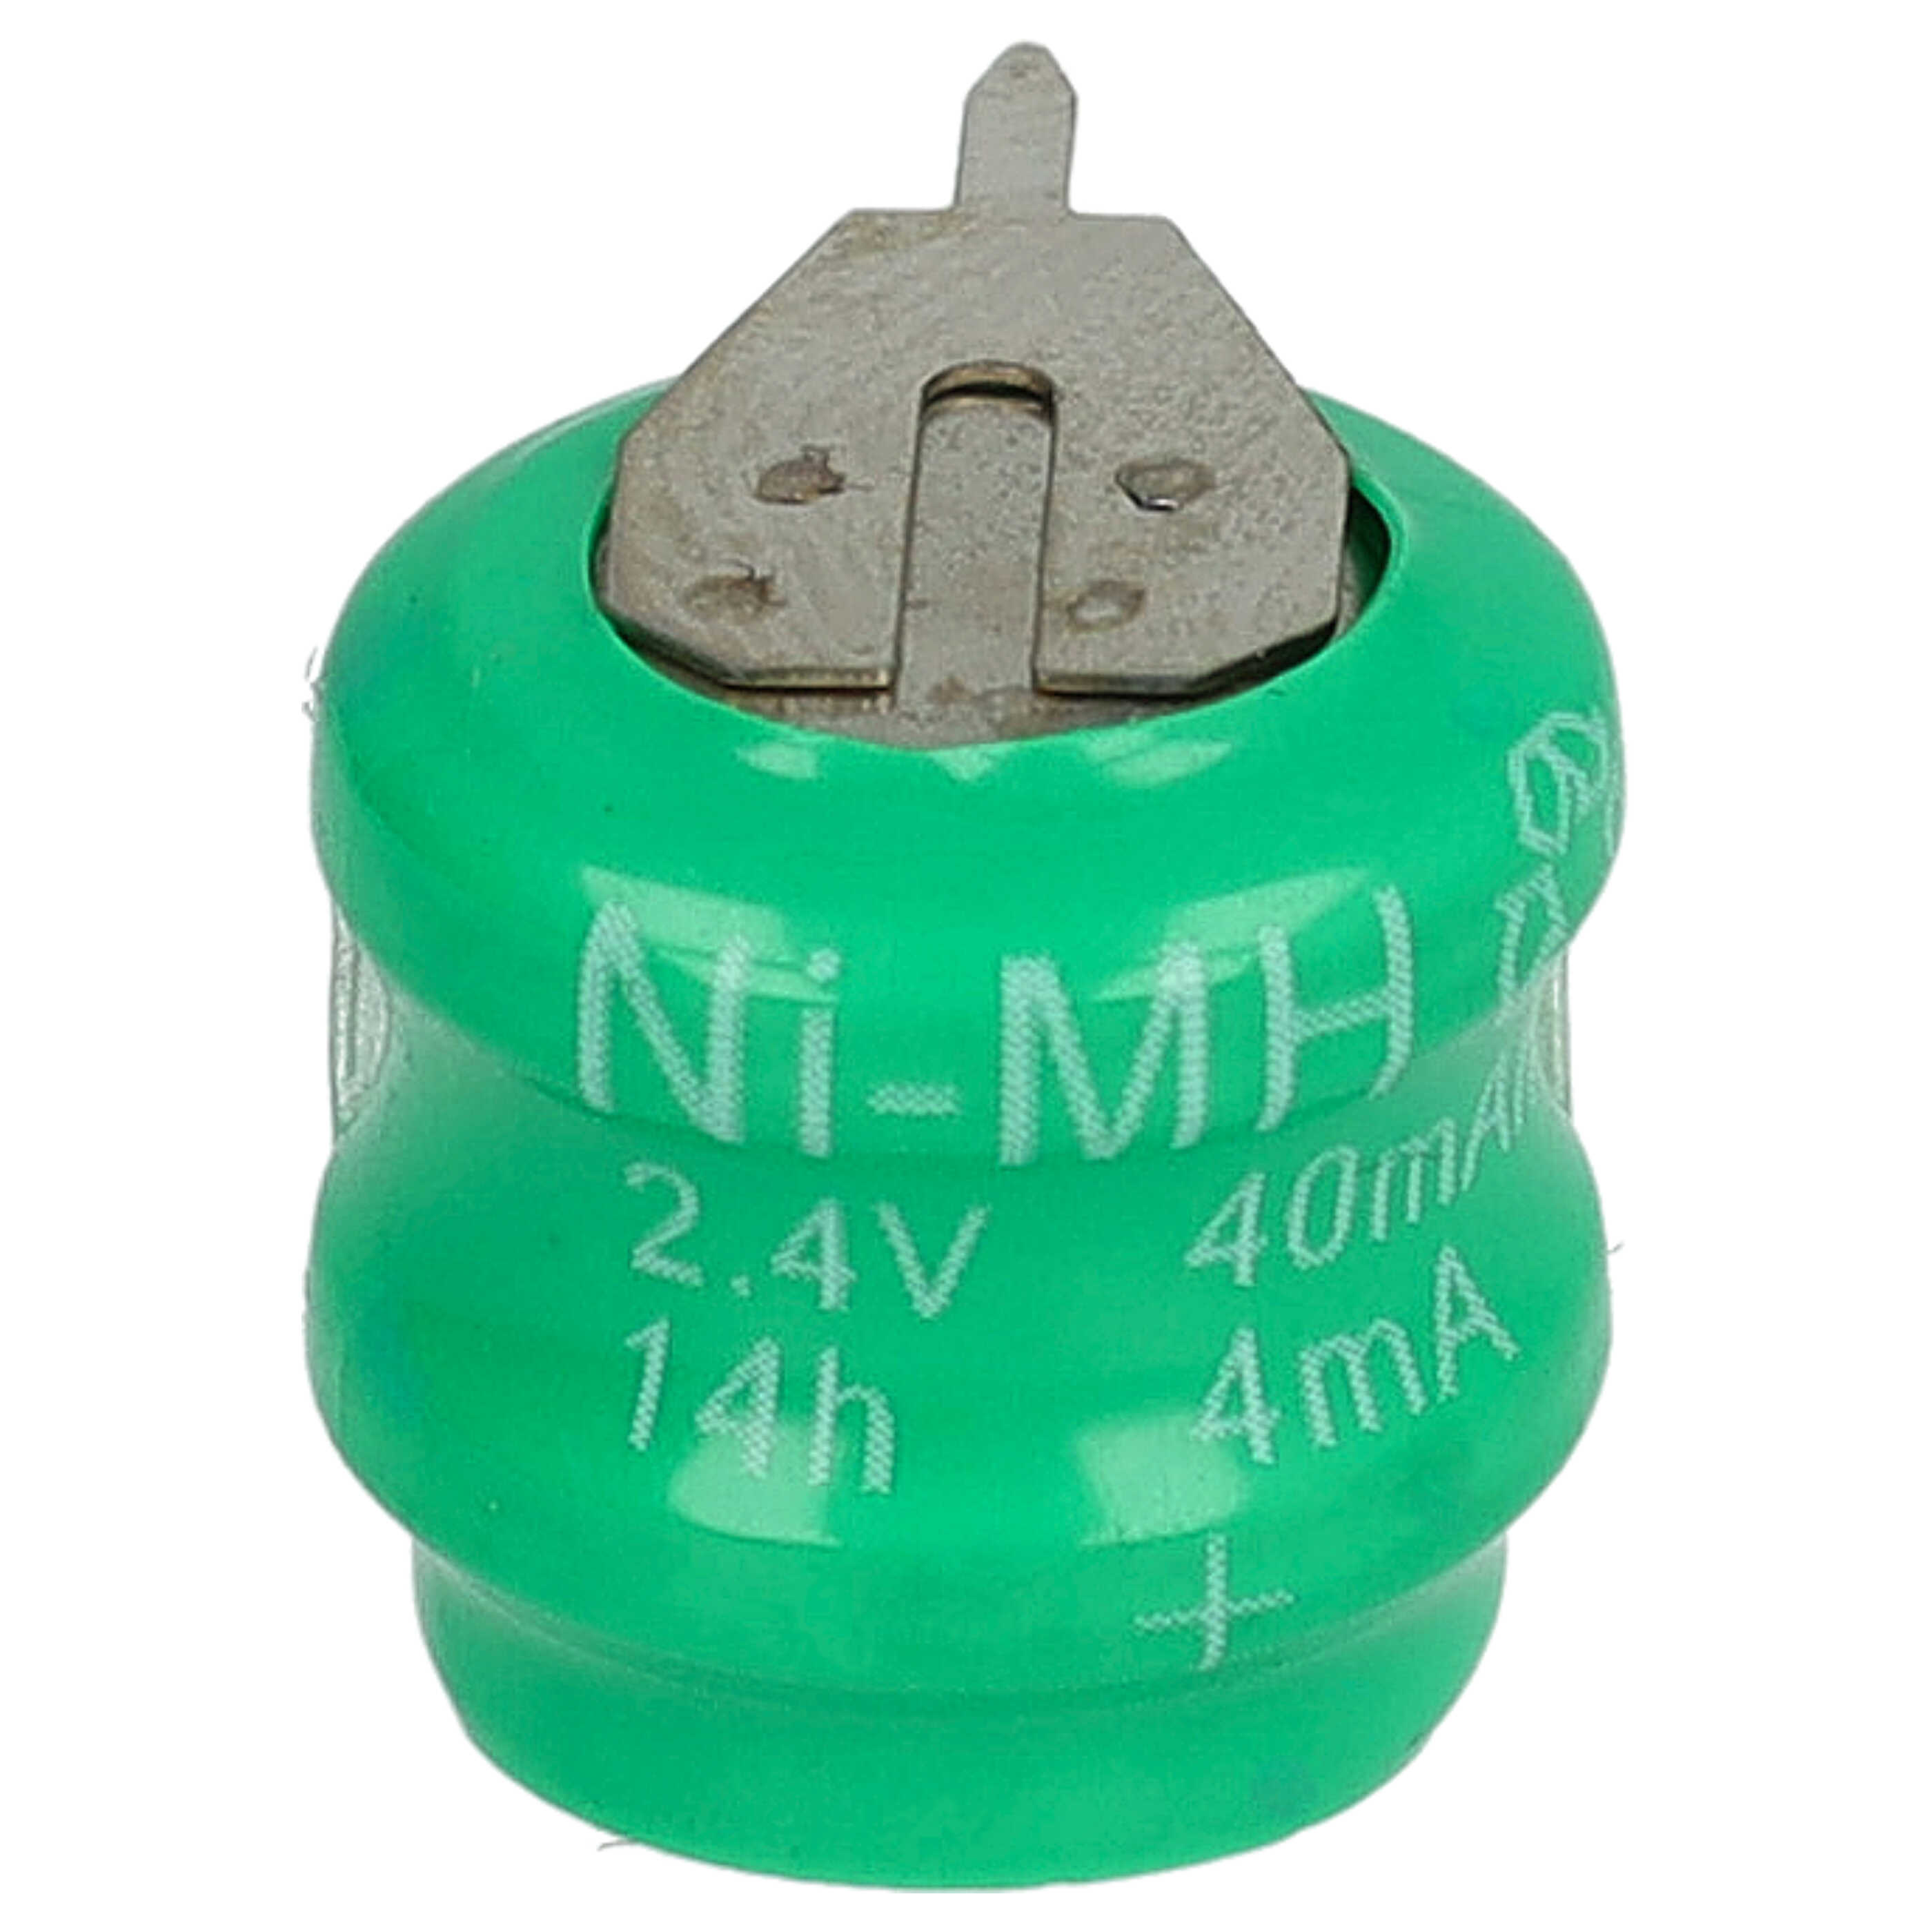 Akumulator guzikowy (2x ogniwo) typ V40H 2 pin do modeli, lamp solarnych itp. zam. V40H - 40 mAh 2,4 V NiMH